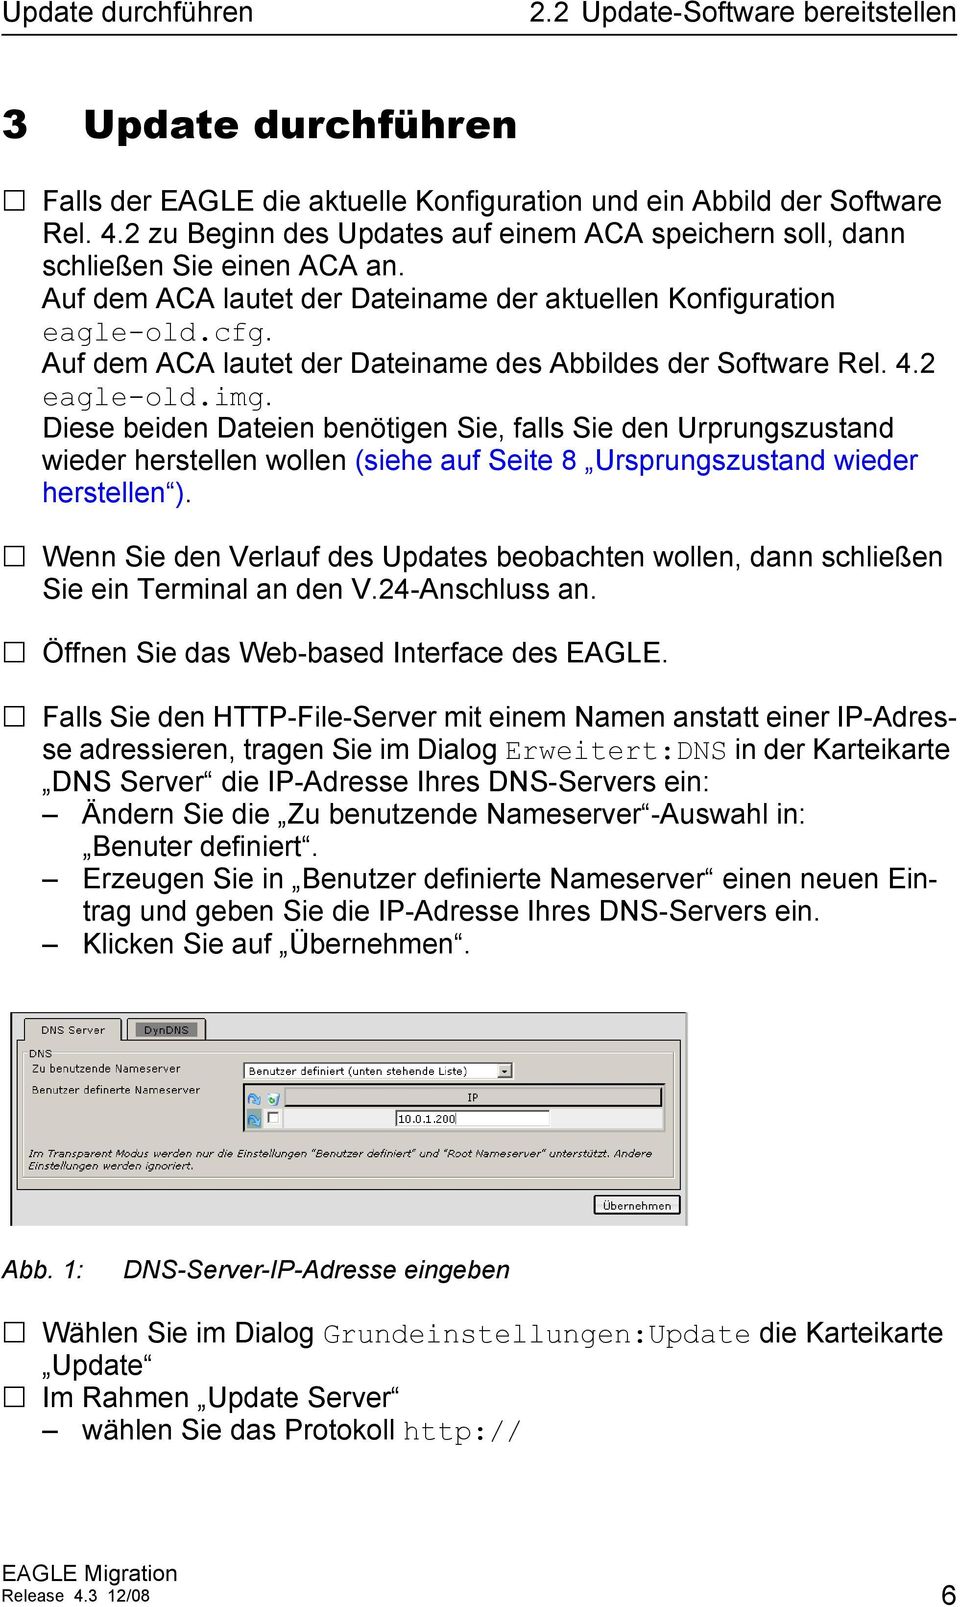 Auf dem ACA lautet der Dateiname des Abbildes der Software Rel. 4.2 eagle-old.img.